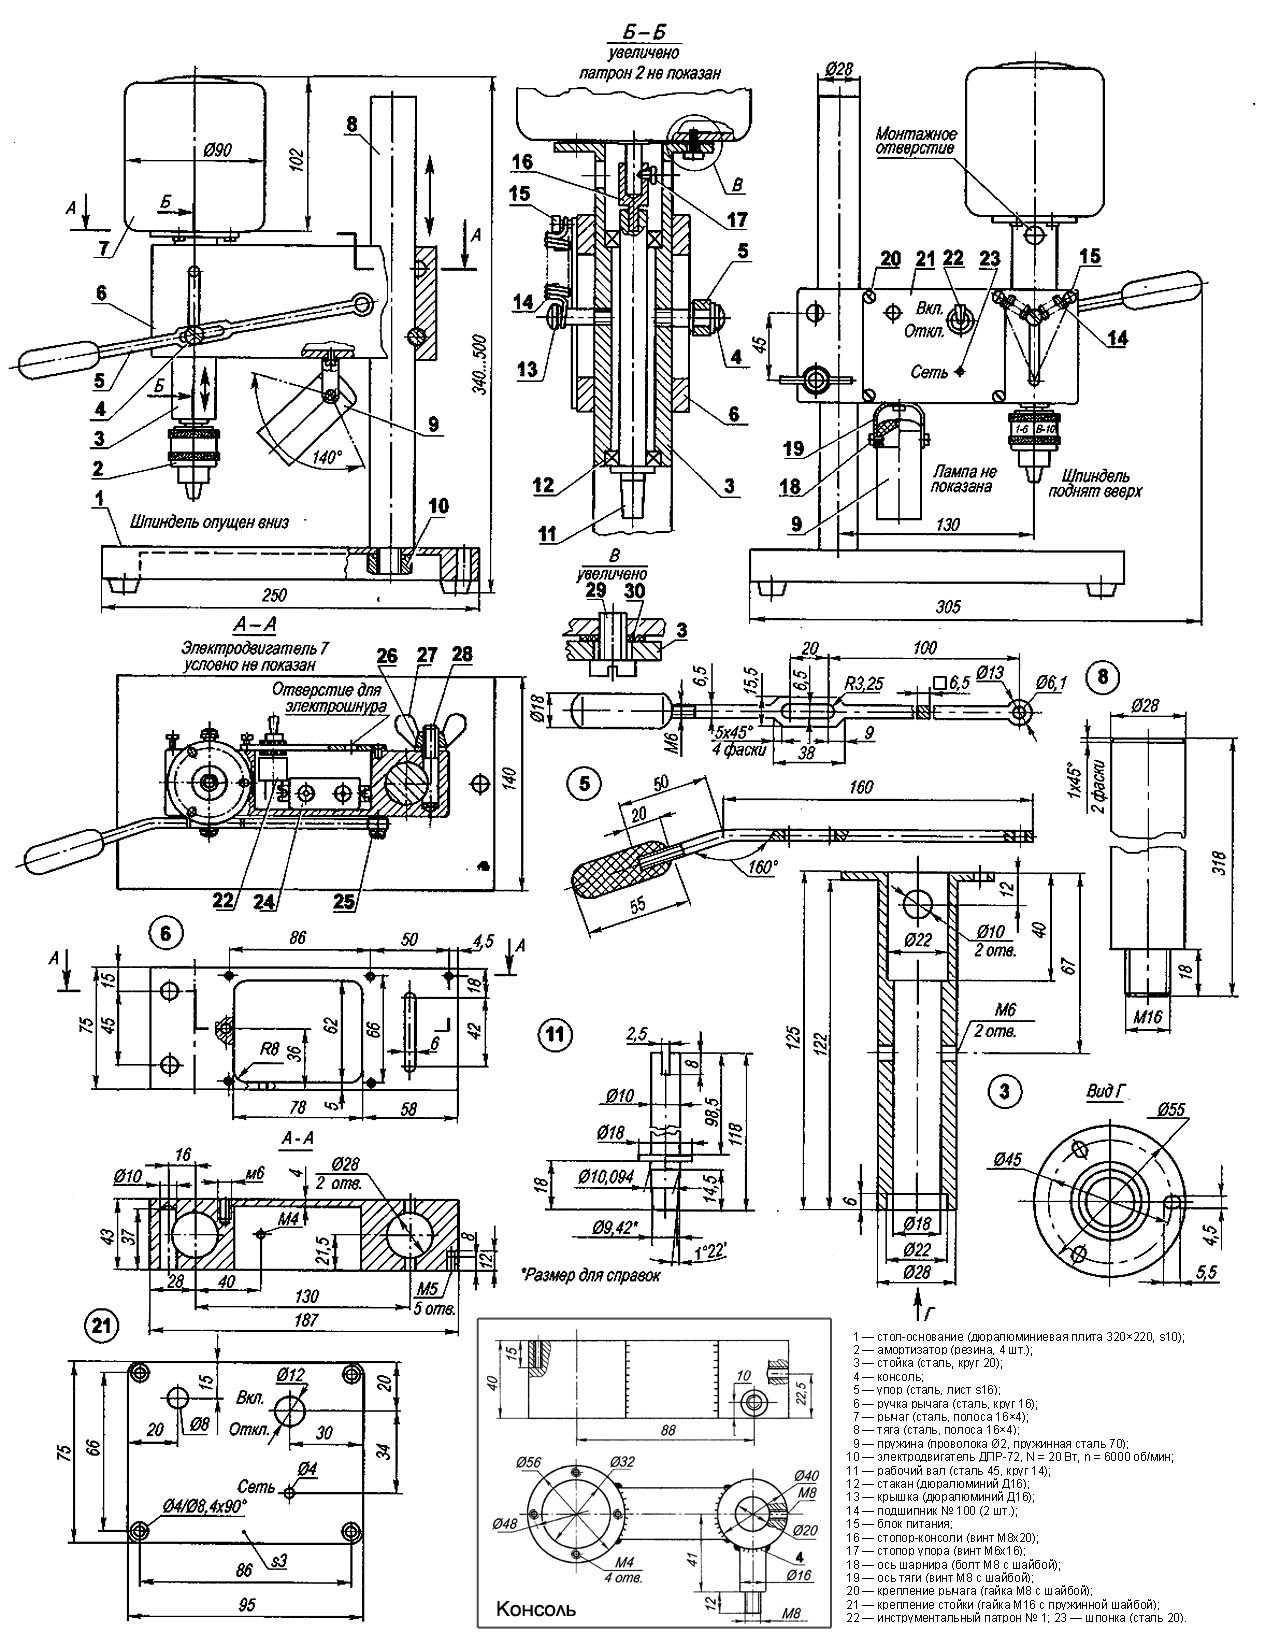 Сверлильный станок своими руками - пошаговое описание постройки мощного станка (150 фото)